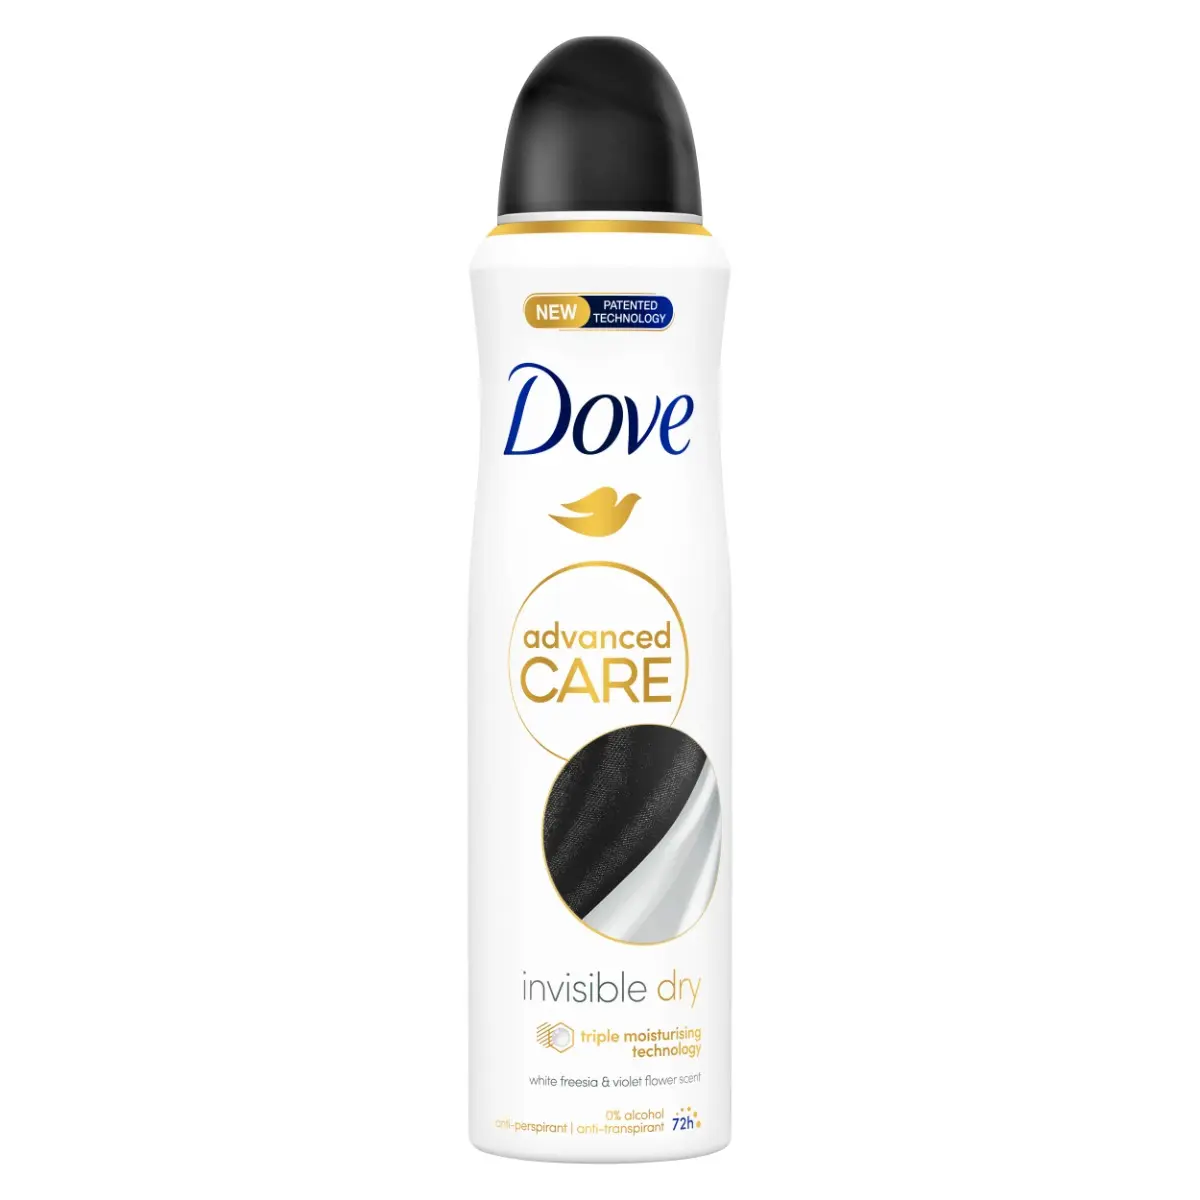 Deodorant Dove Invisible Dry Advanced Care 150ml